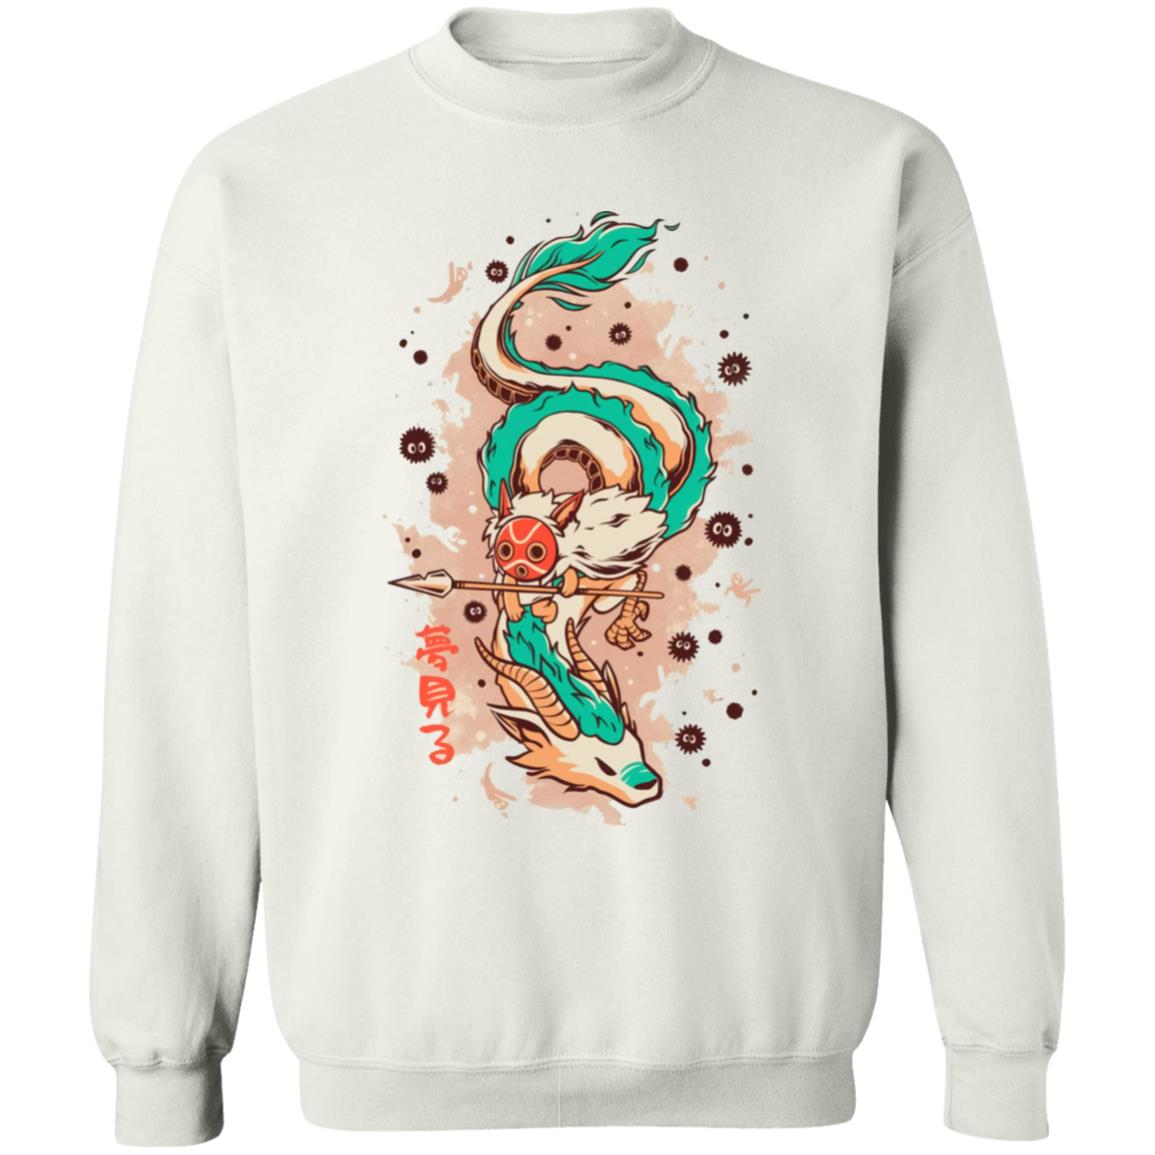 Princess Mononoke on the Dragon Sweatshirt